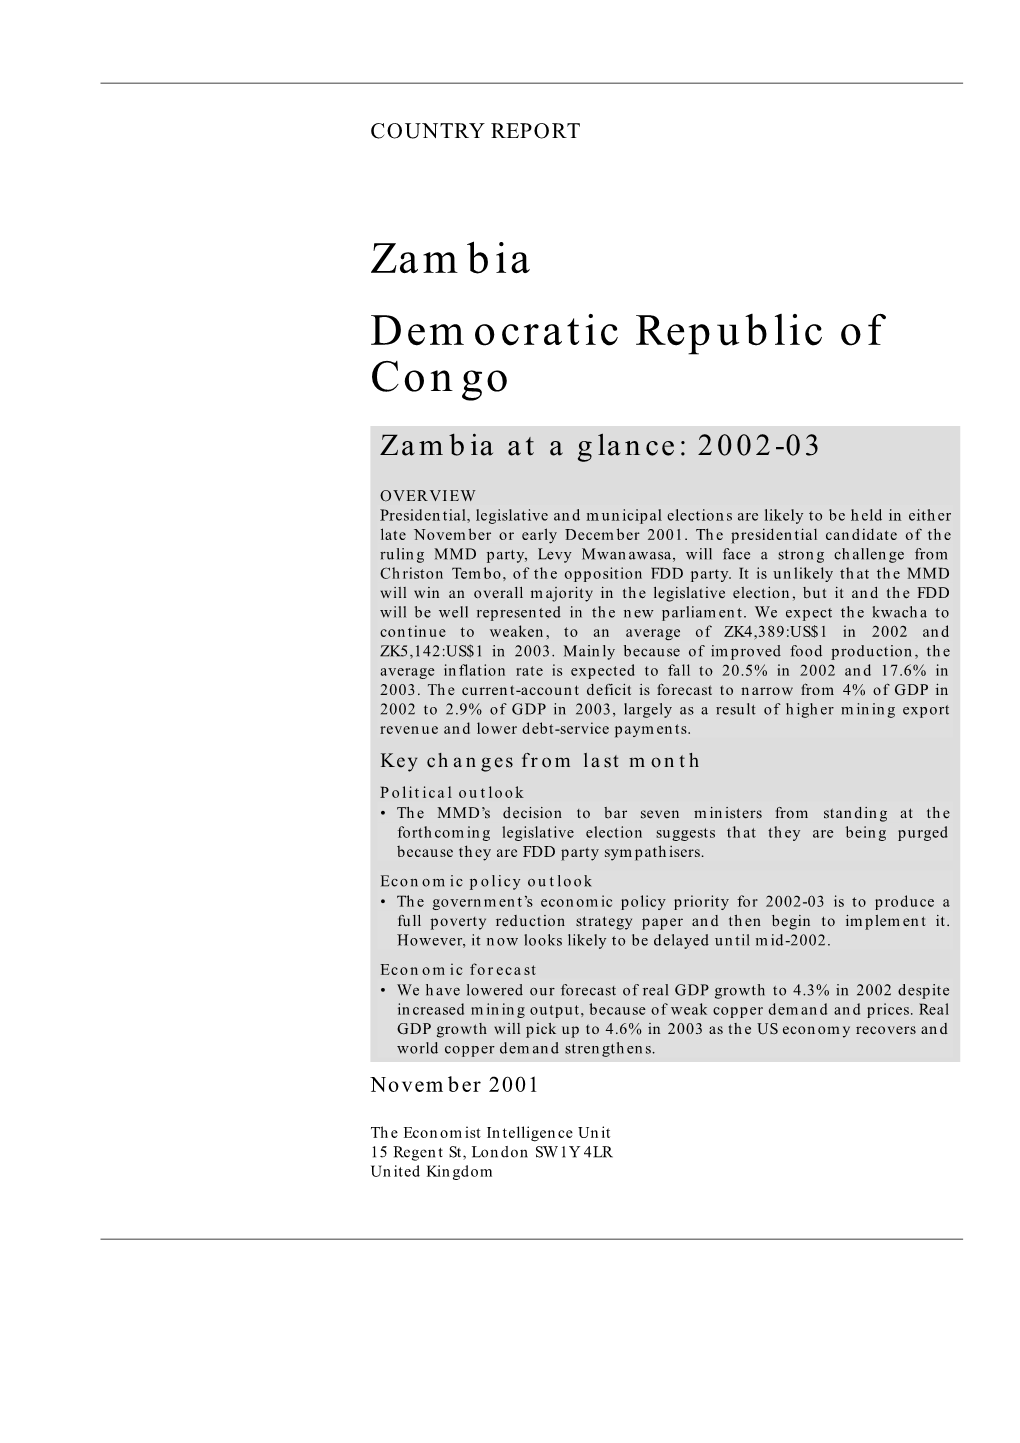 Zambia Democratic Republic of Congo Zambia at a Glance: 2002-03